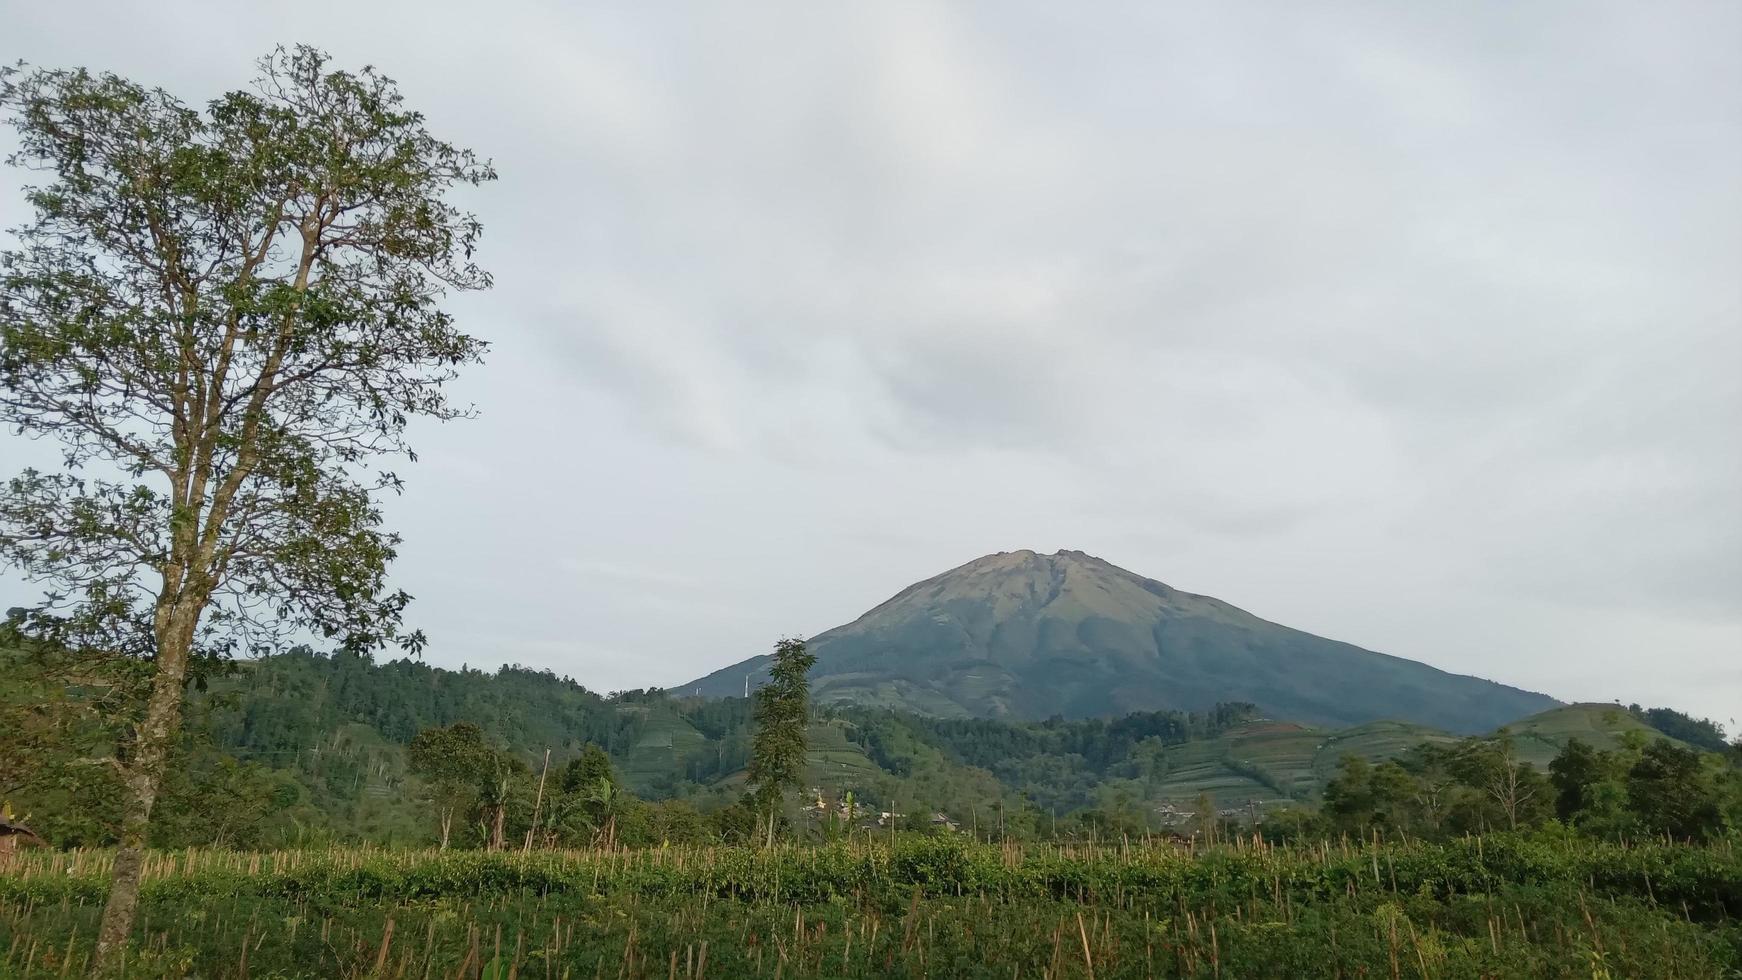 Mount sumbing landscape view photo